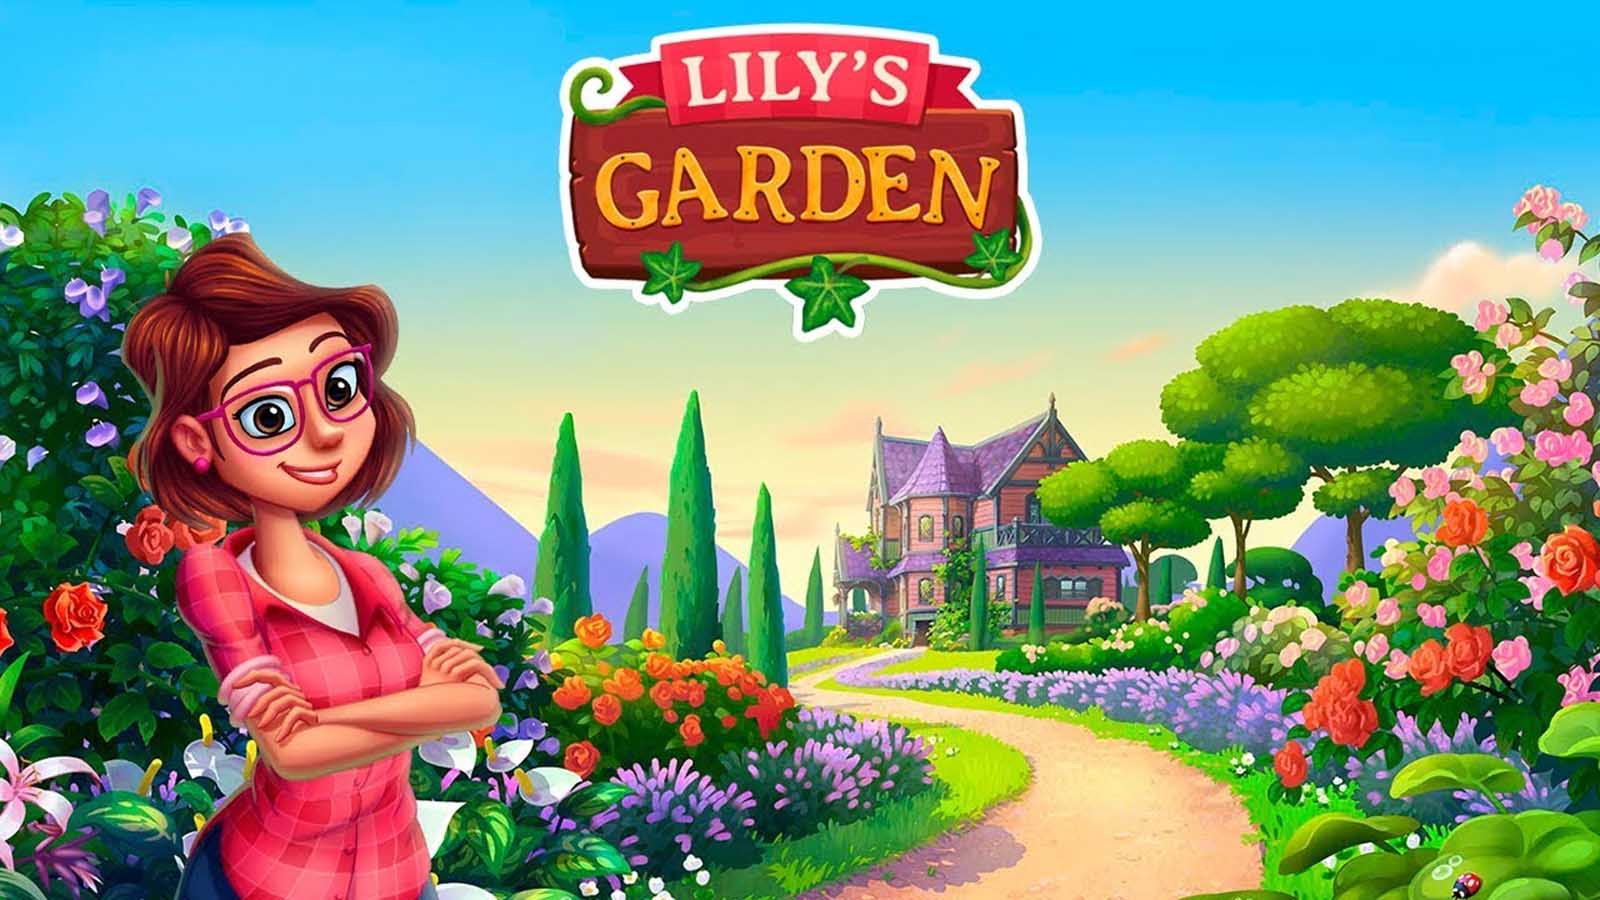 بررسی و معرفی بازی دخترانه جالب lily's garden